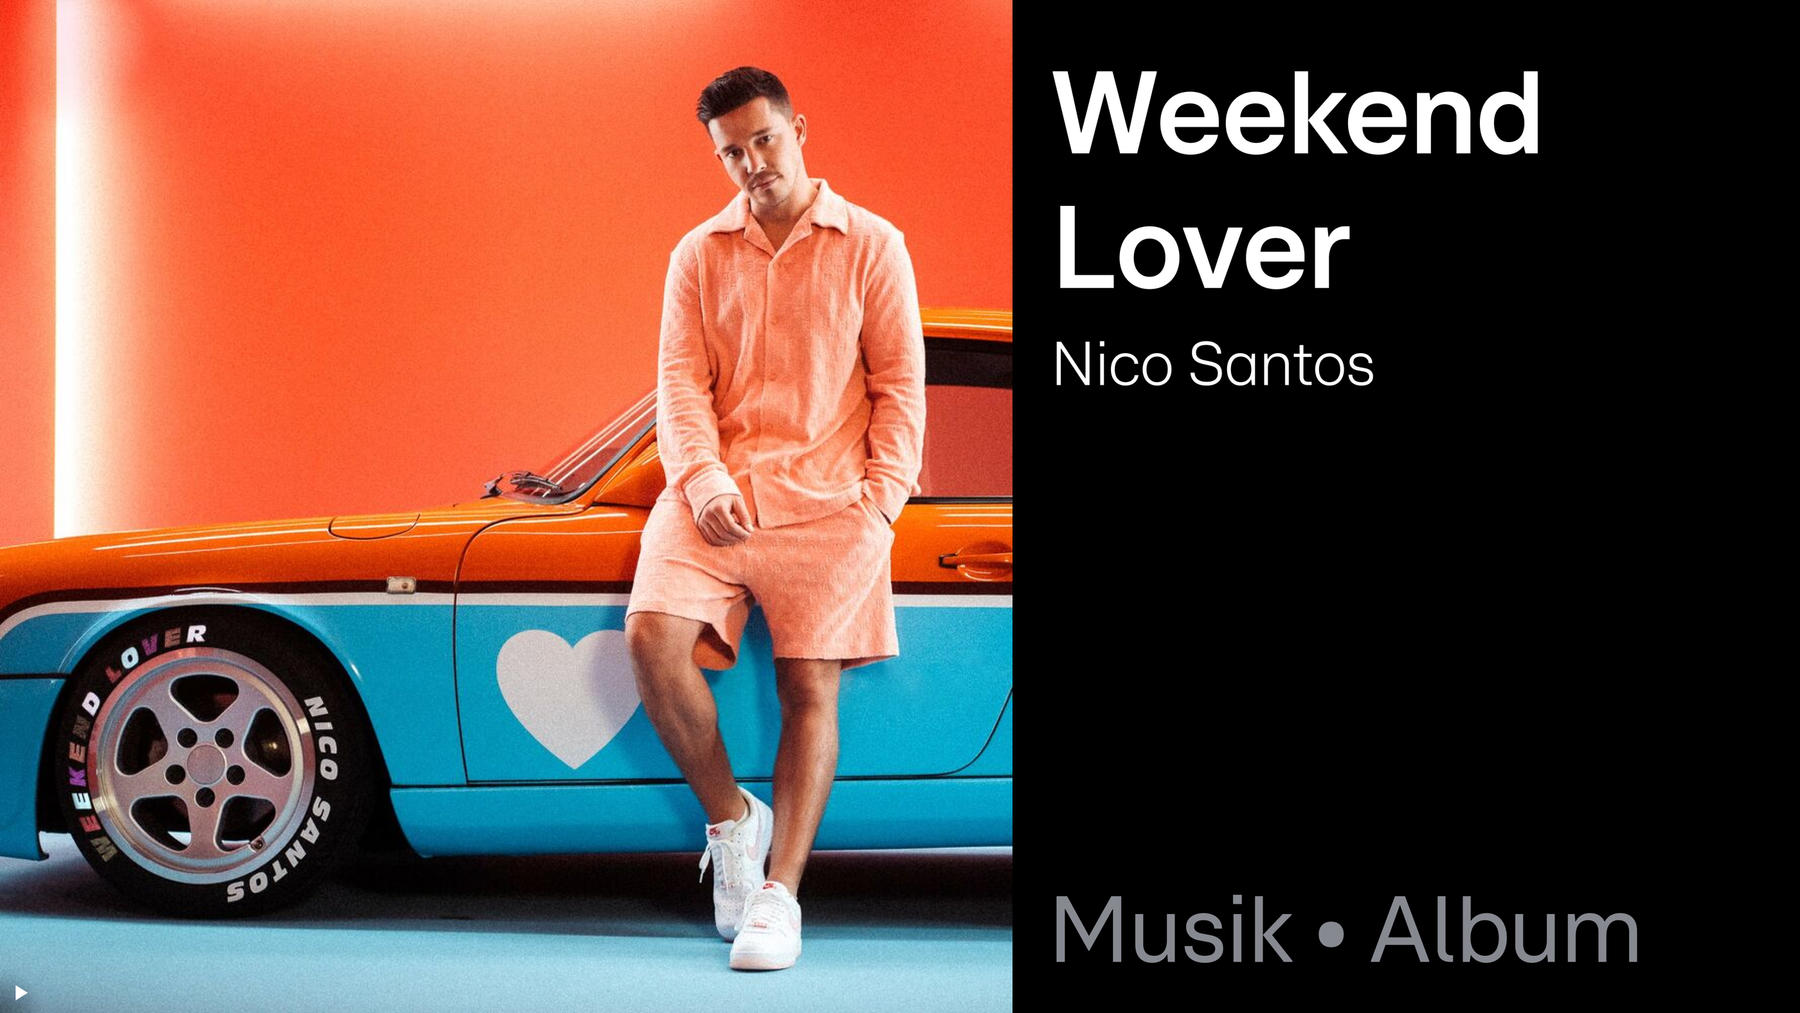 Single: Weekend Lover